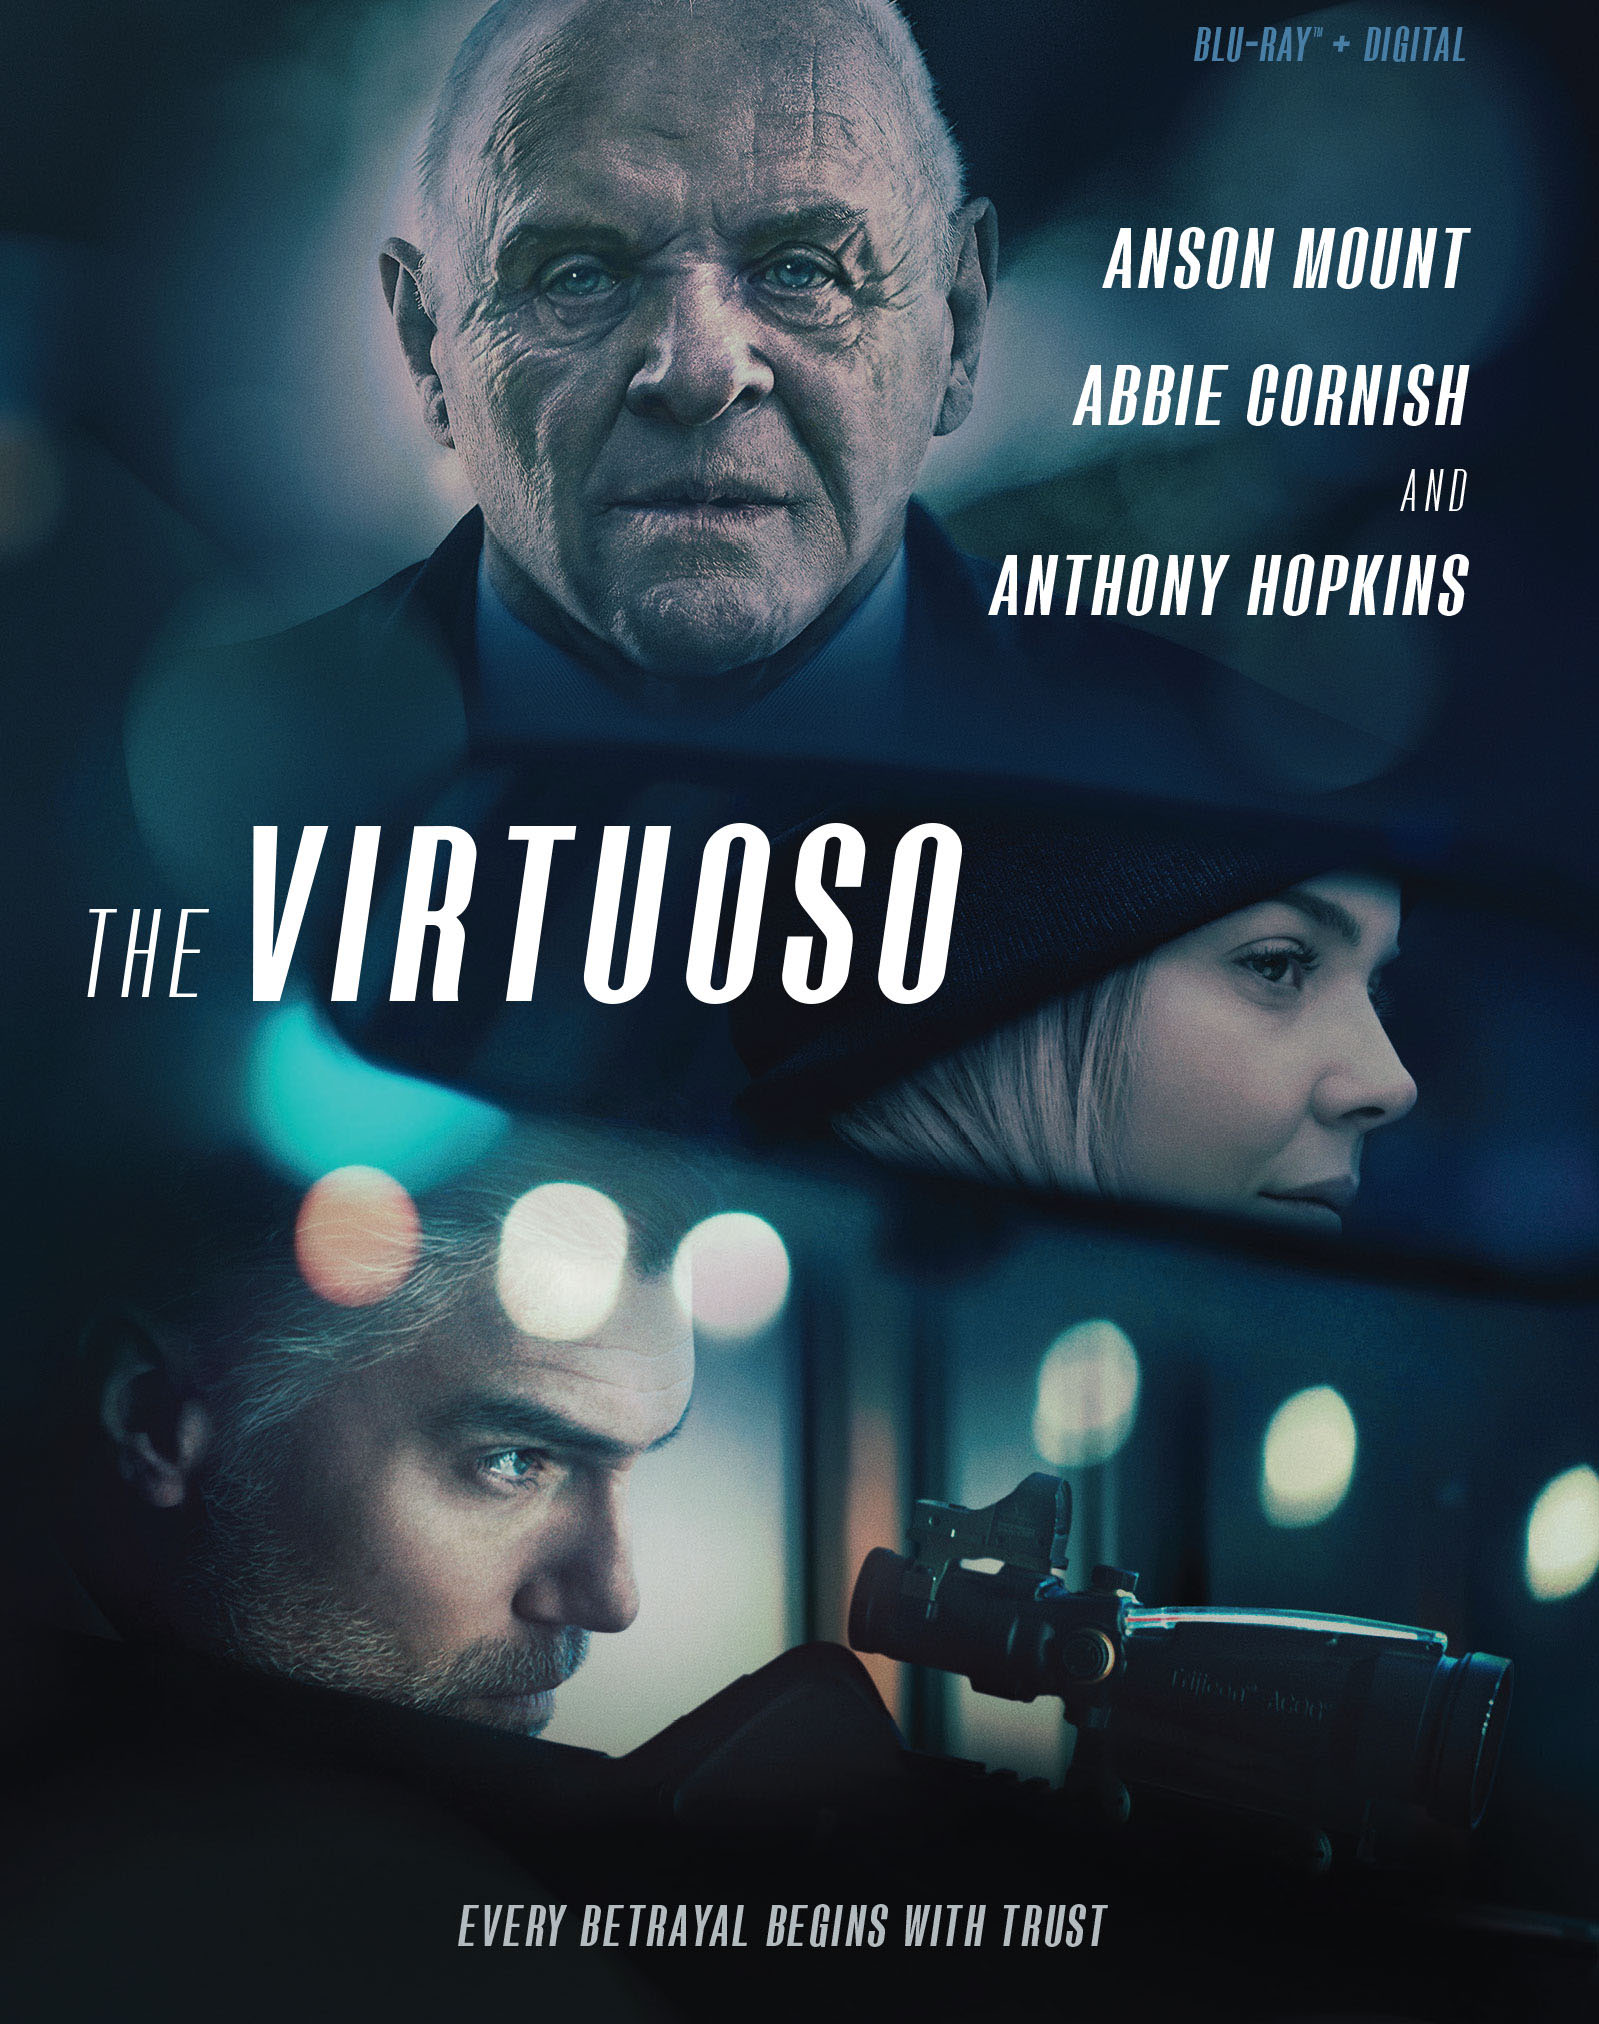 Film Kritik | The Virtuoso ist ein vorhersehbarer und langweiliger Thriller